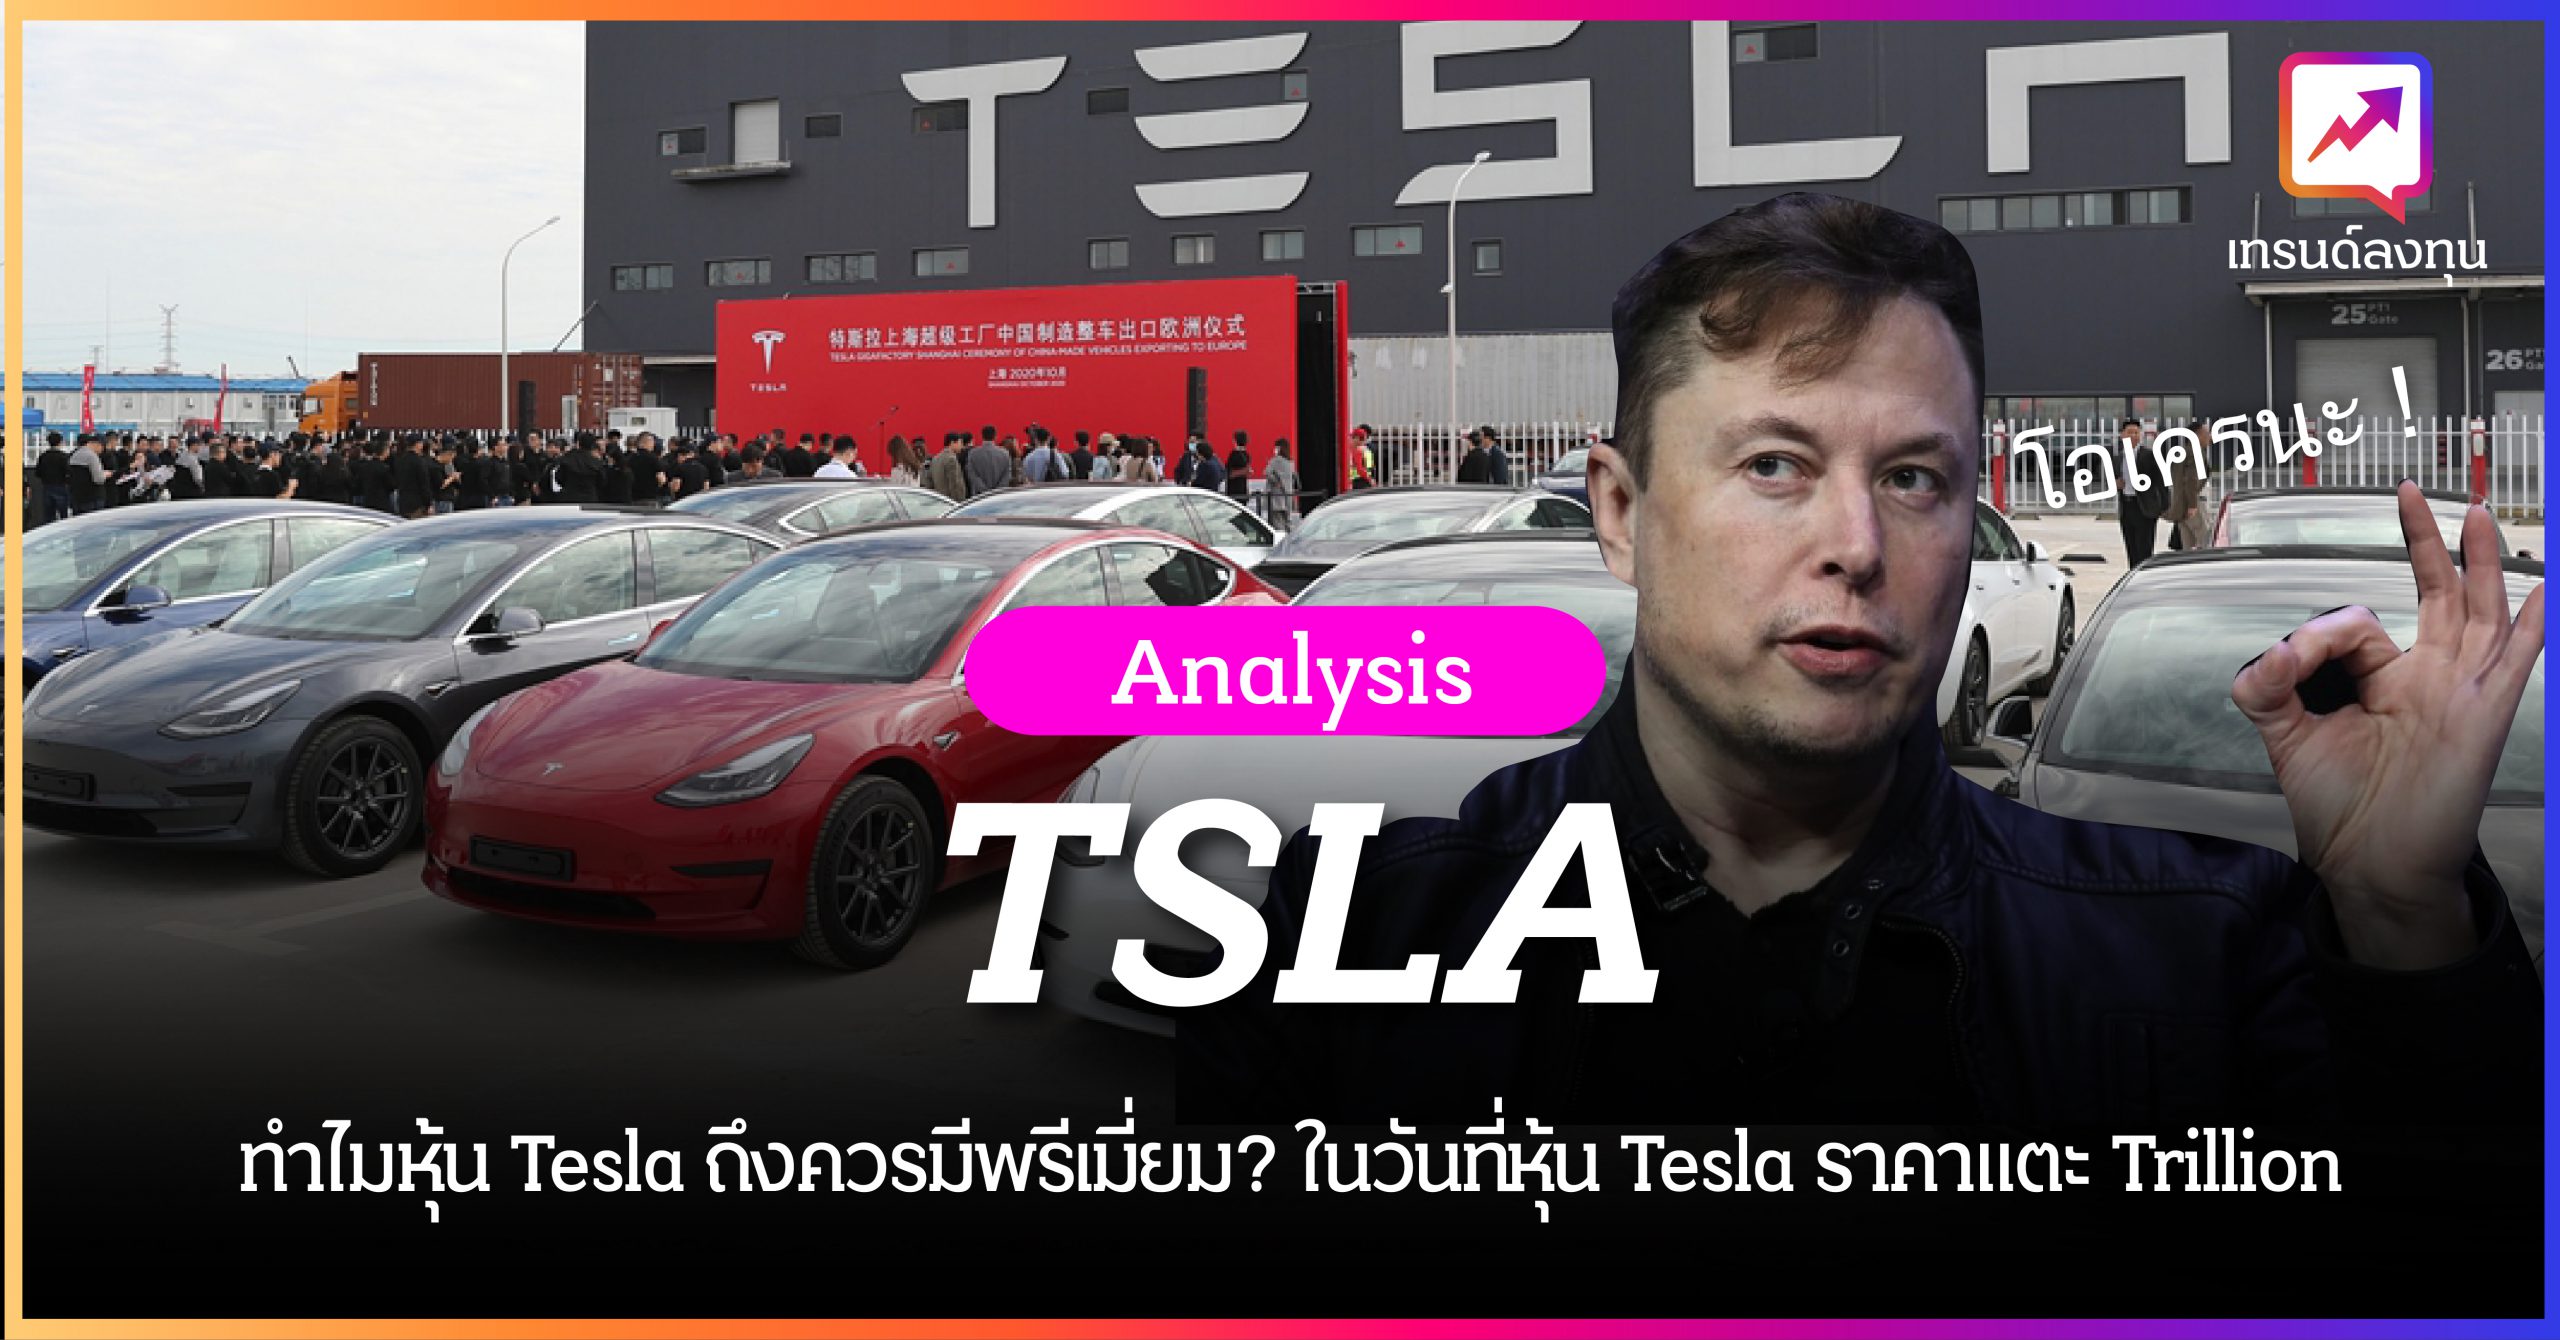 ทำไมหุ้น Tesla ถึงควรมีพรีเมี่ยม? ในวันที่หุ้น Tesla ราคาแตะ Trillion